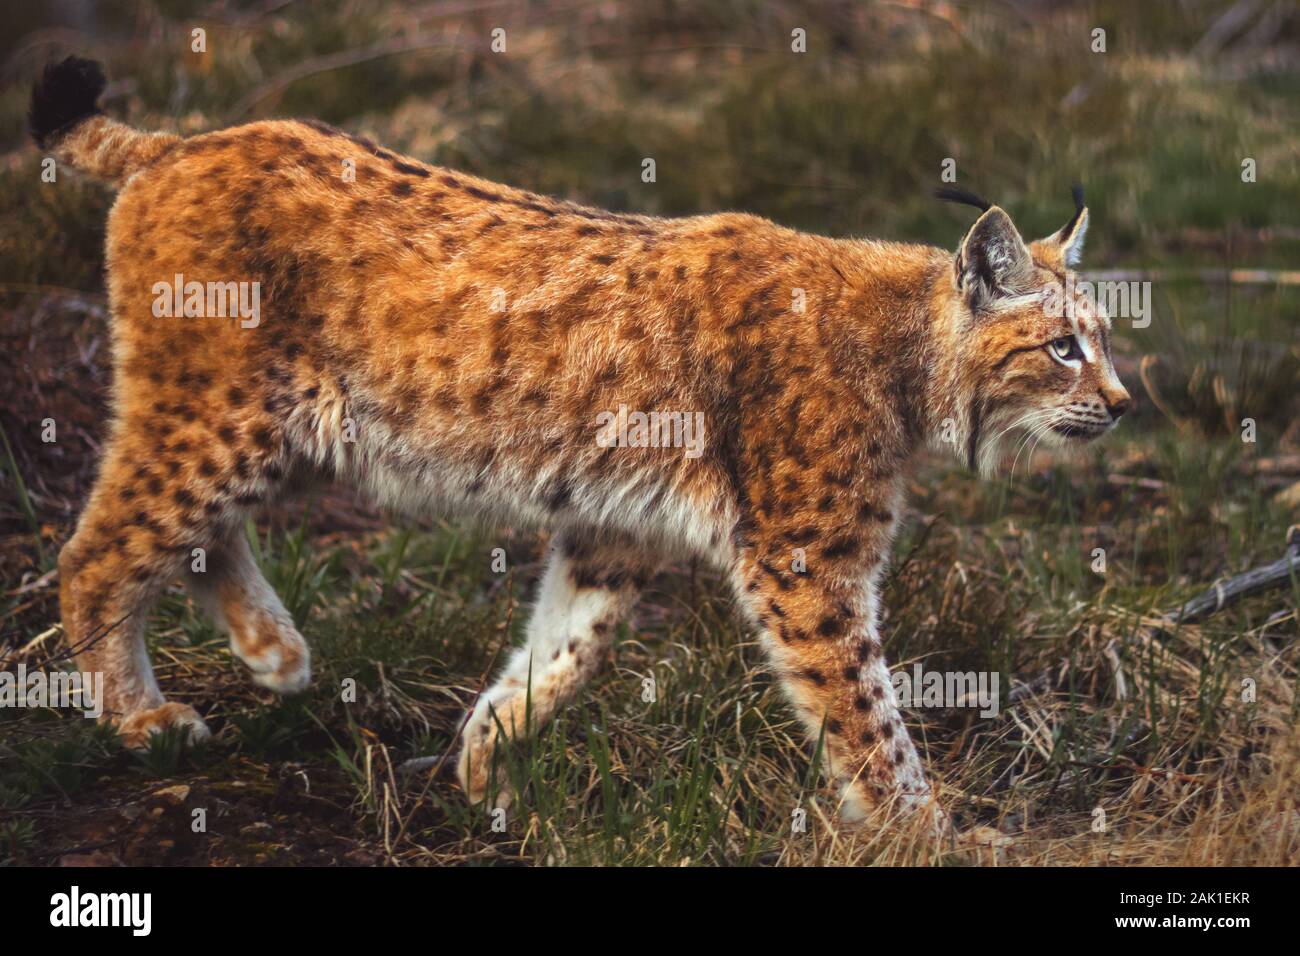 Lynx (feline beast - Eurasian lynx) walking in the Bohemian Forest, side view Stock Photo